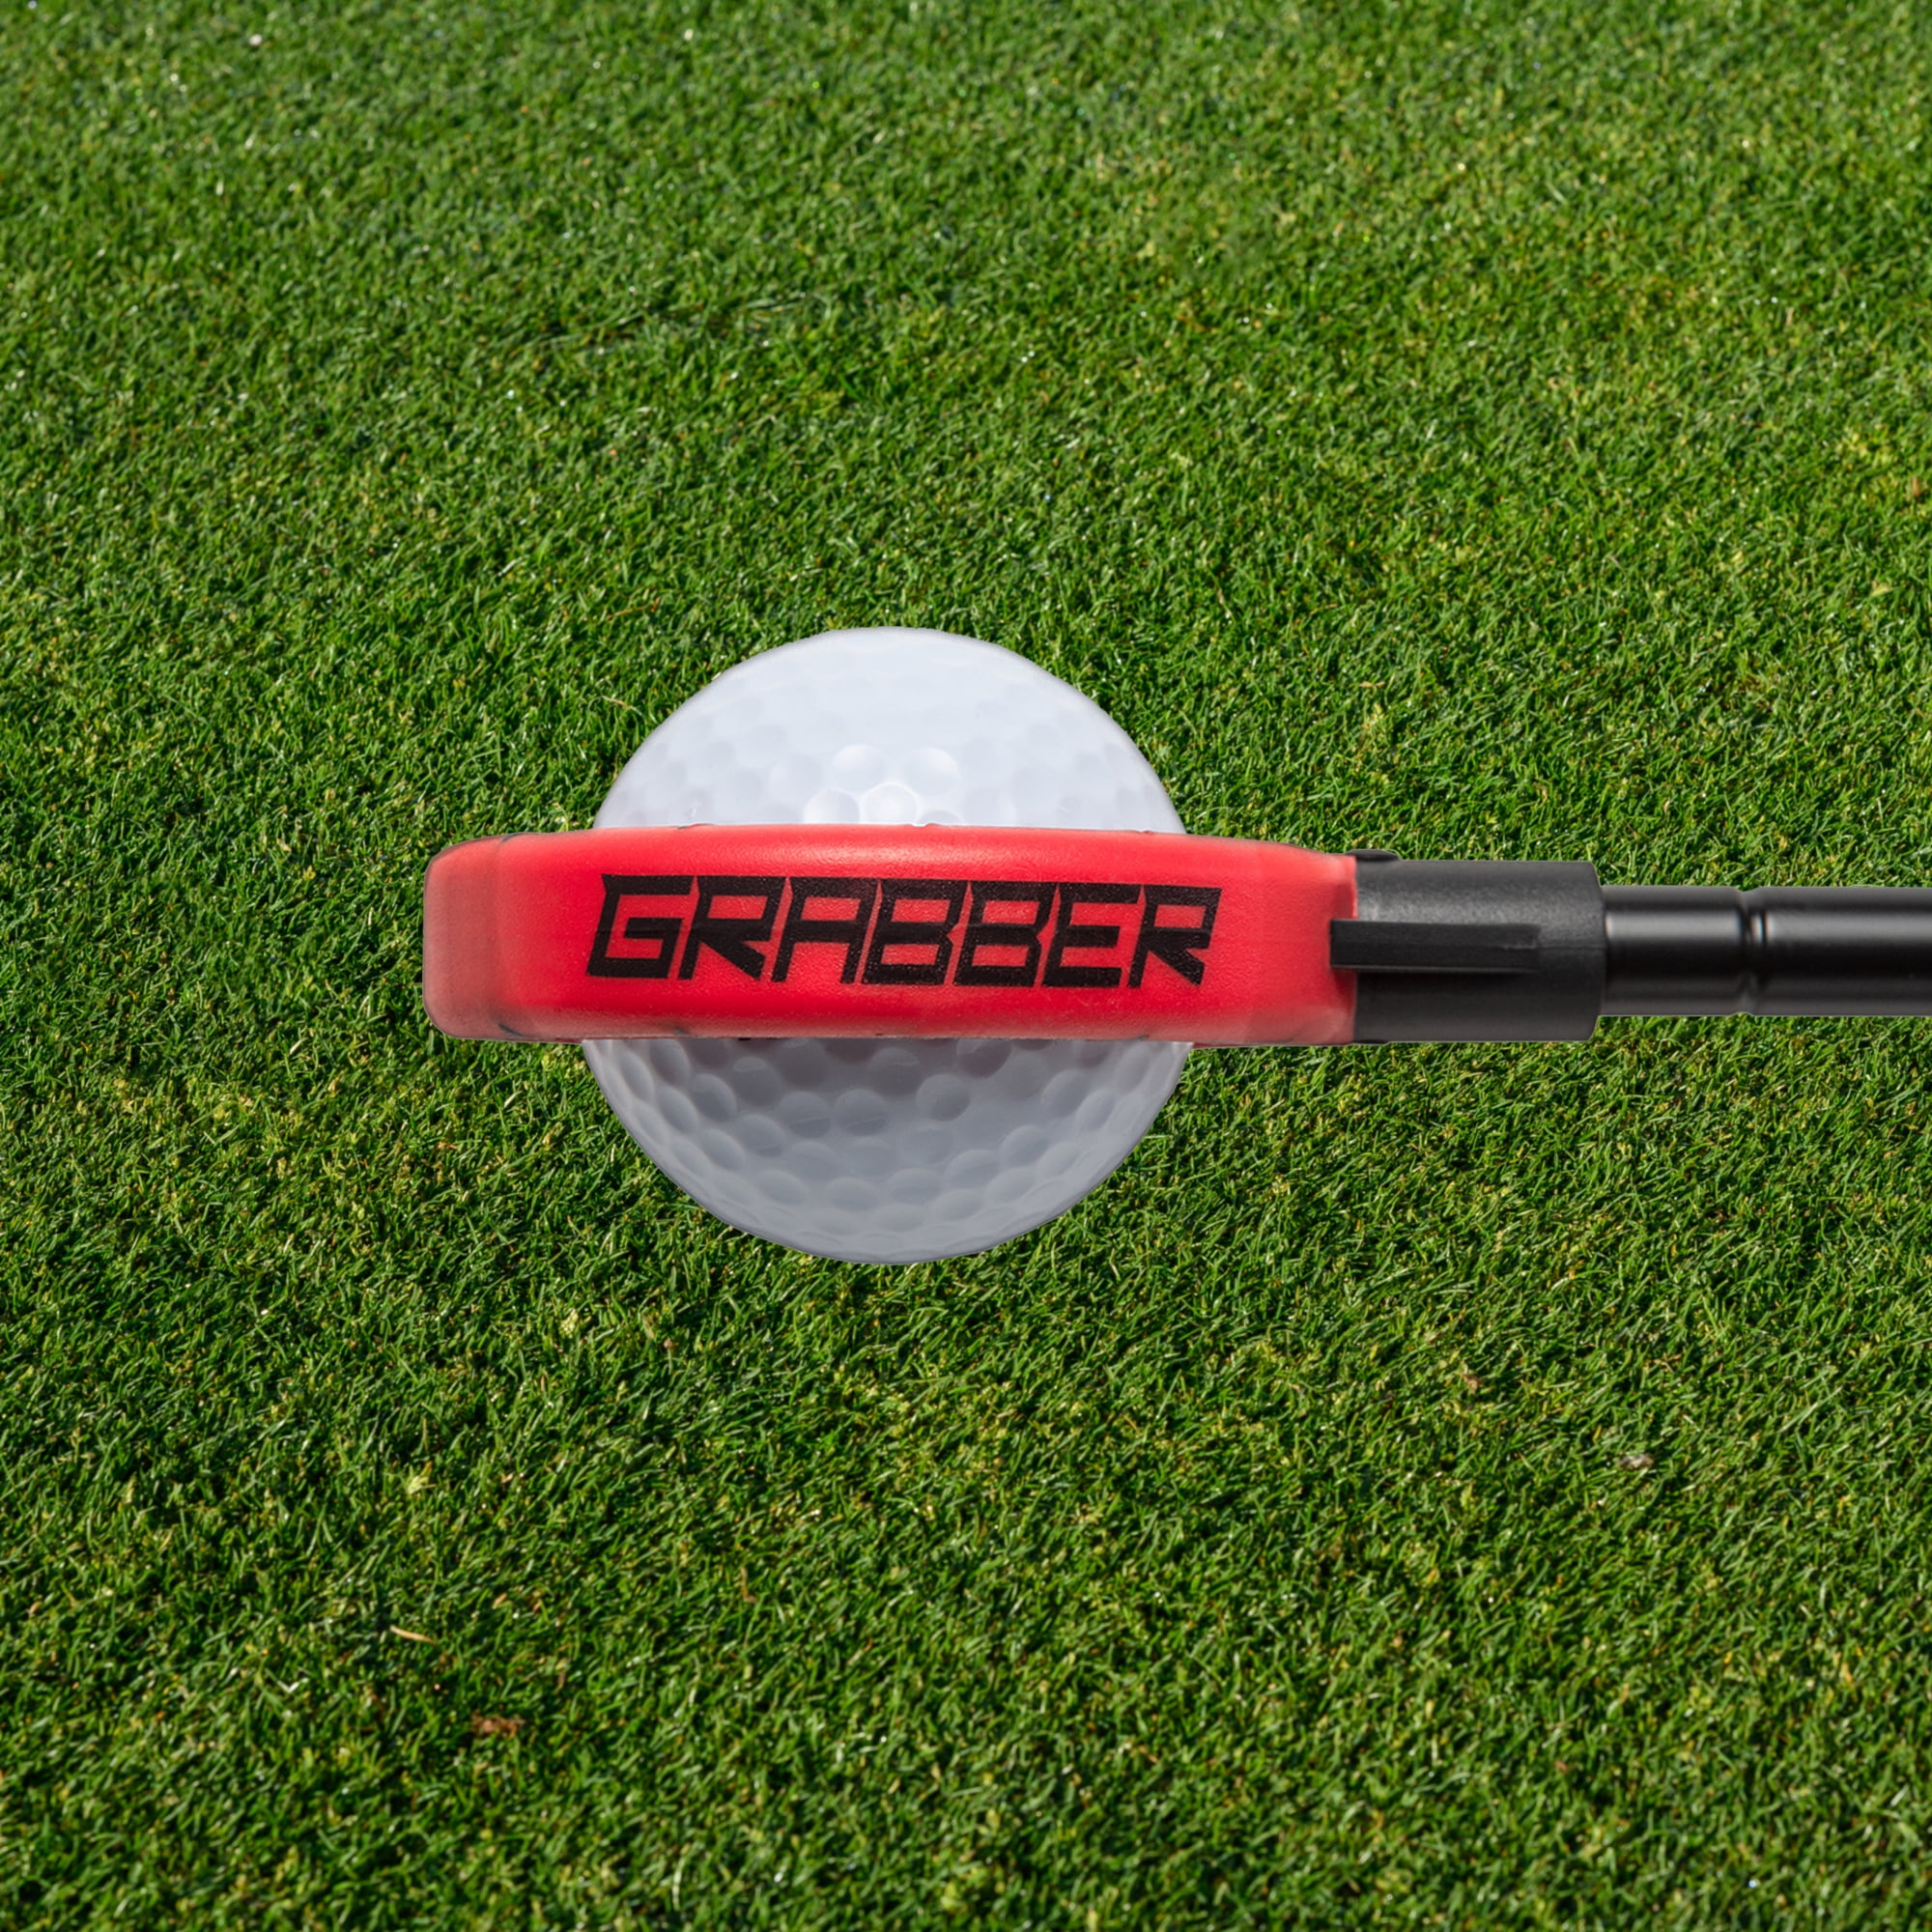 Big Red 14' Ultra Compact 10 oz. Golf Ball Retriever 